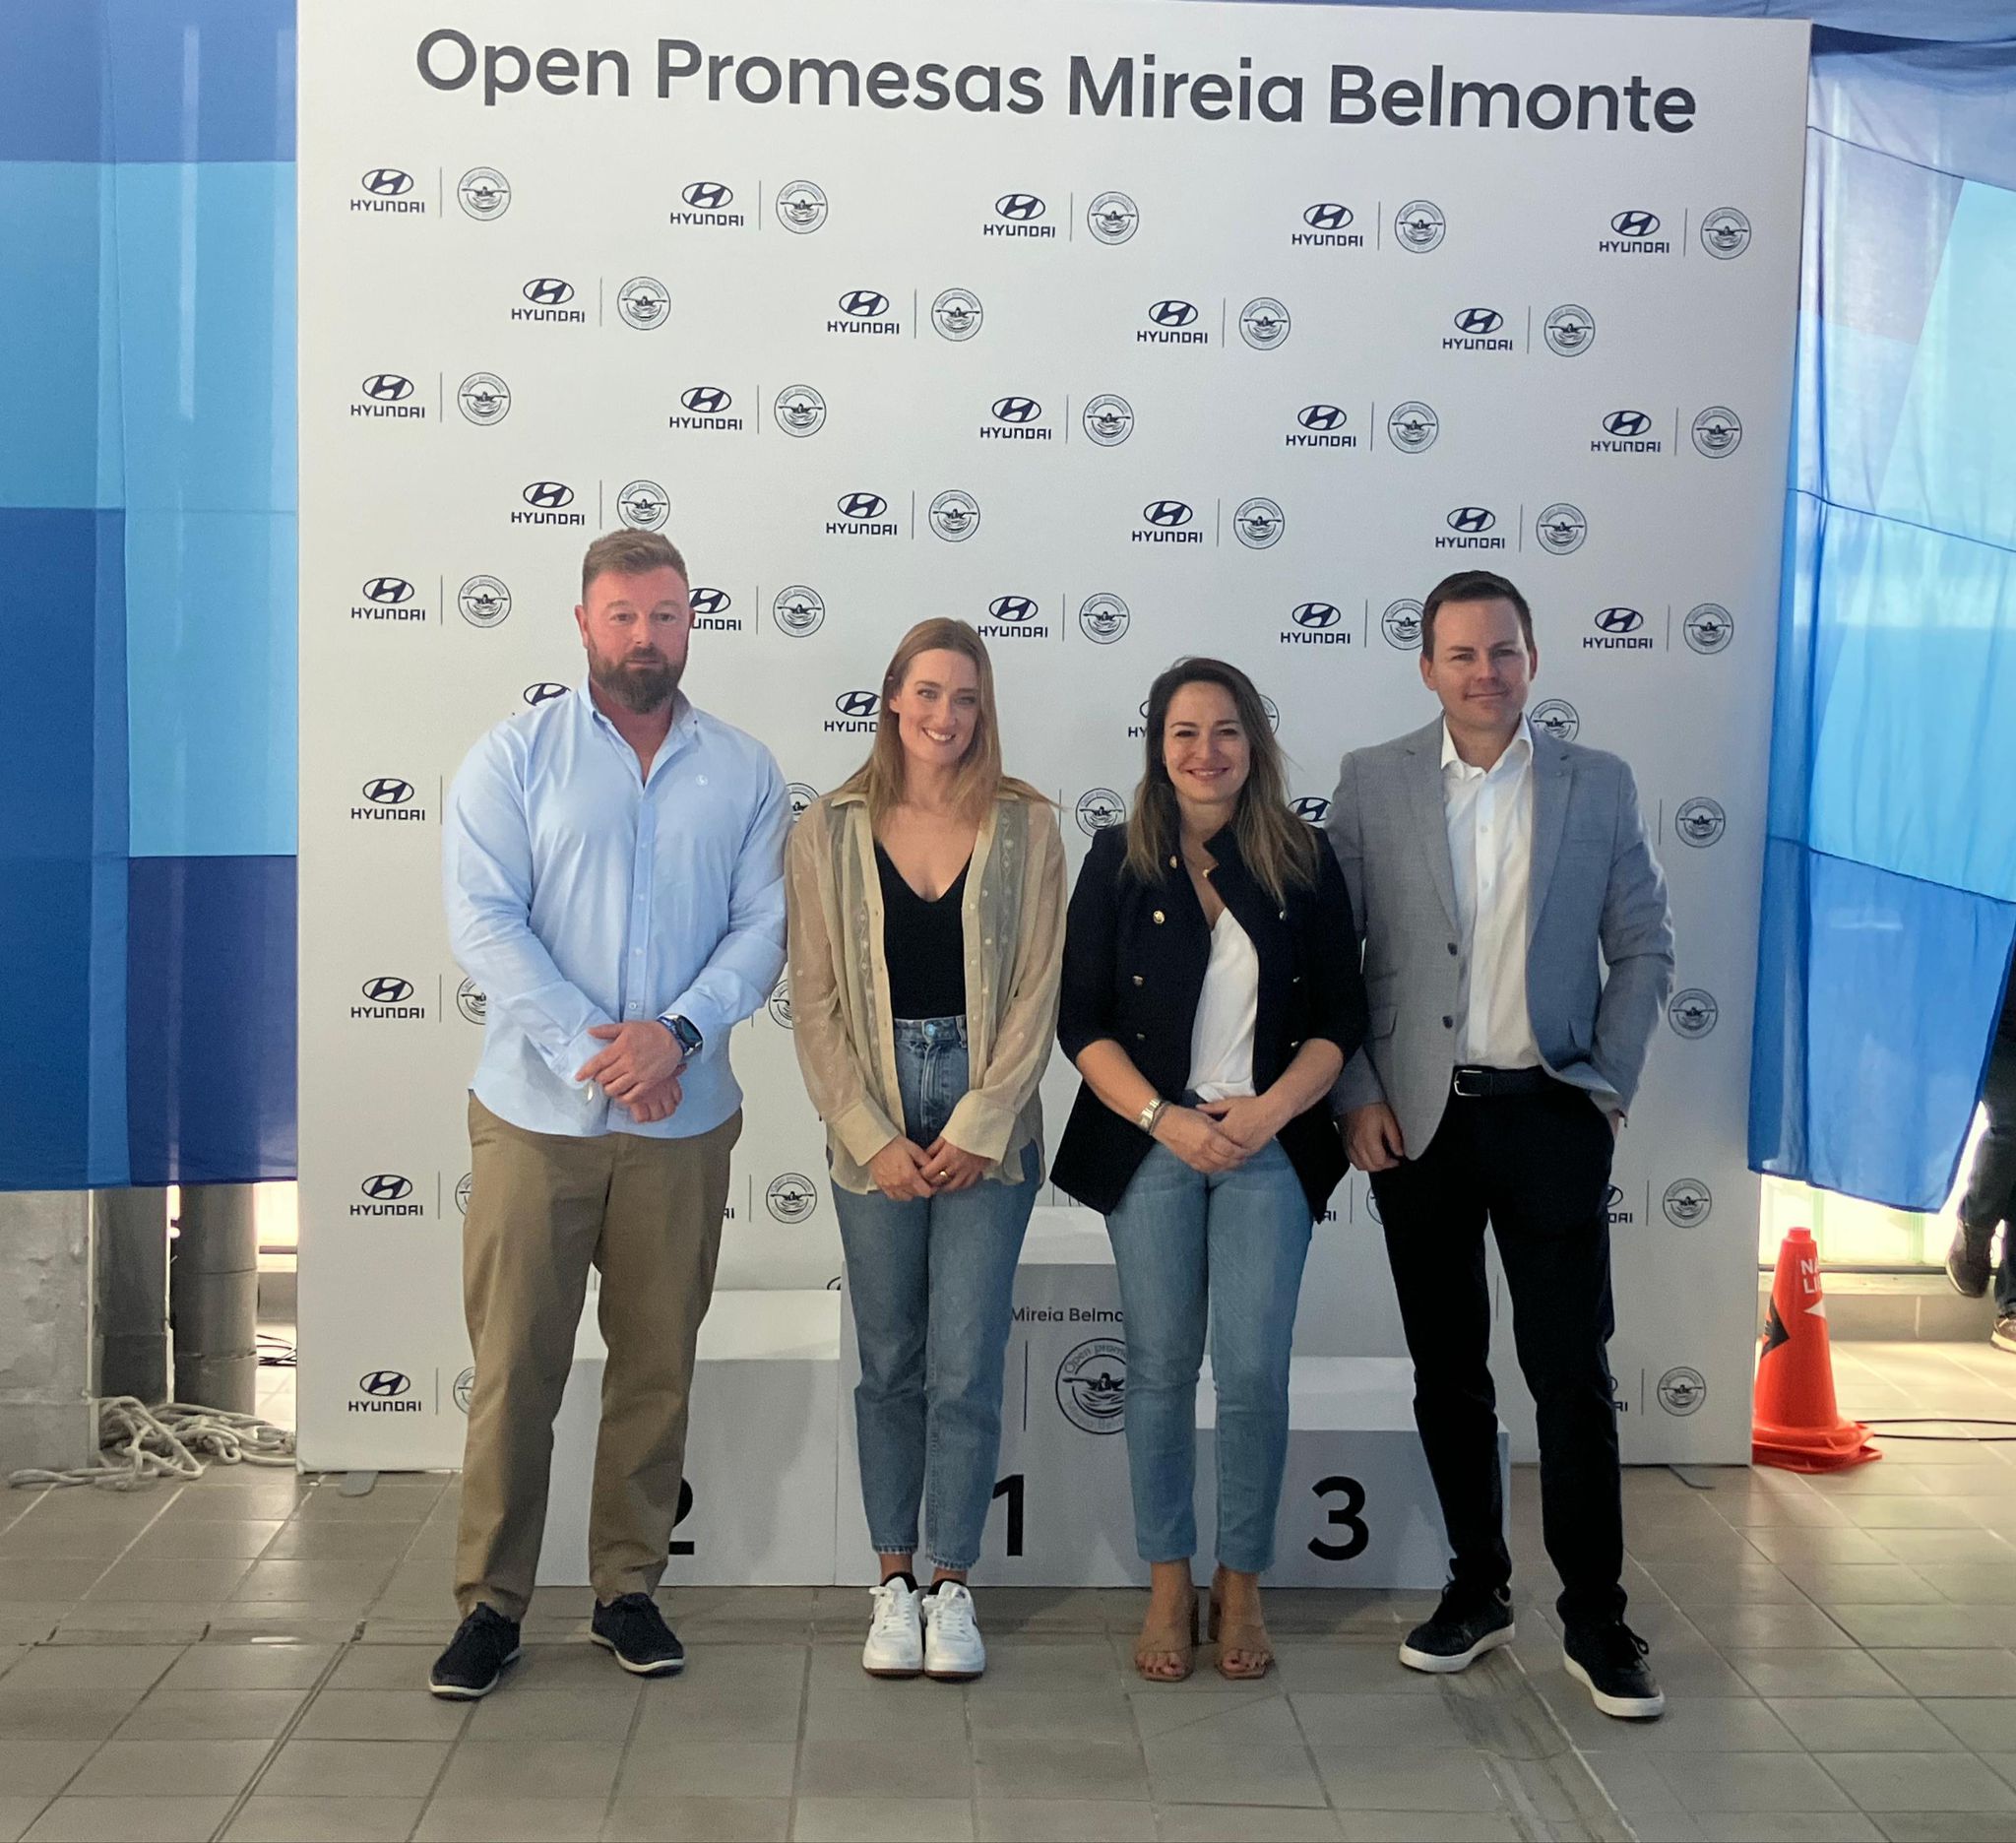 Castelló acull el Open Promeses Hyundai amb Mireia Belmonte i el Club de Natació Castalia-Castelló exerceix d'amfitrió